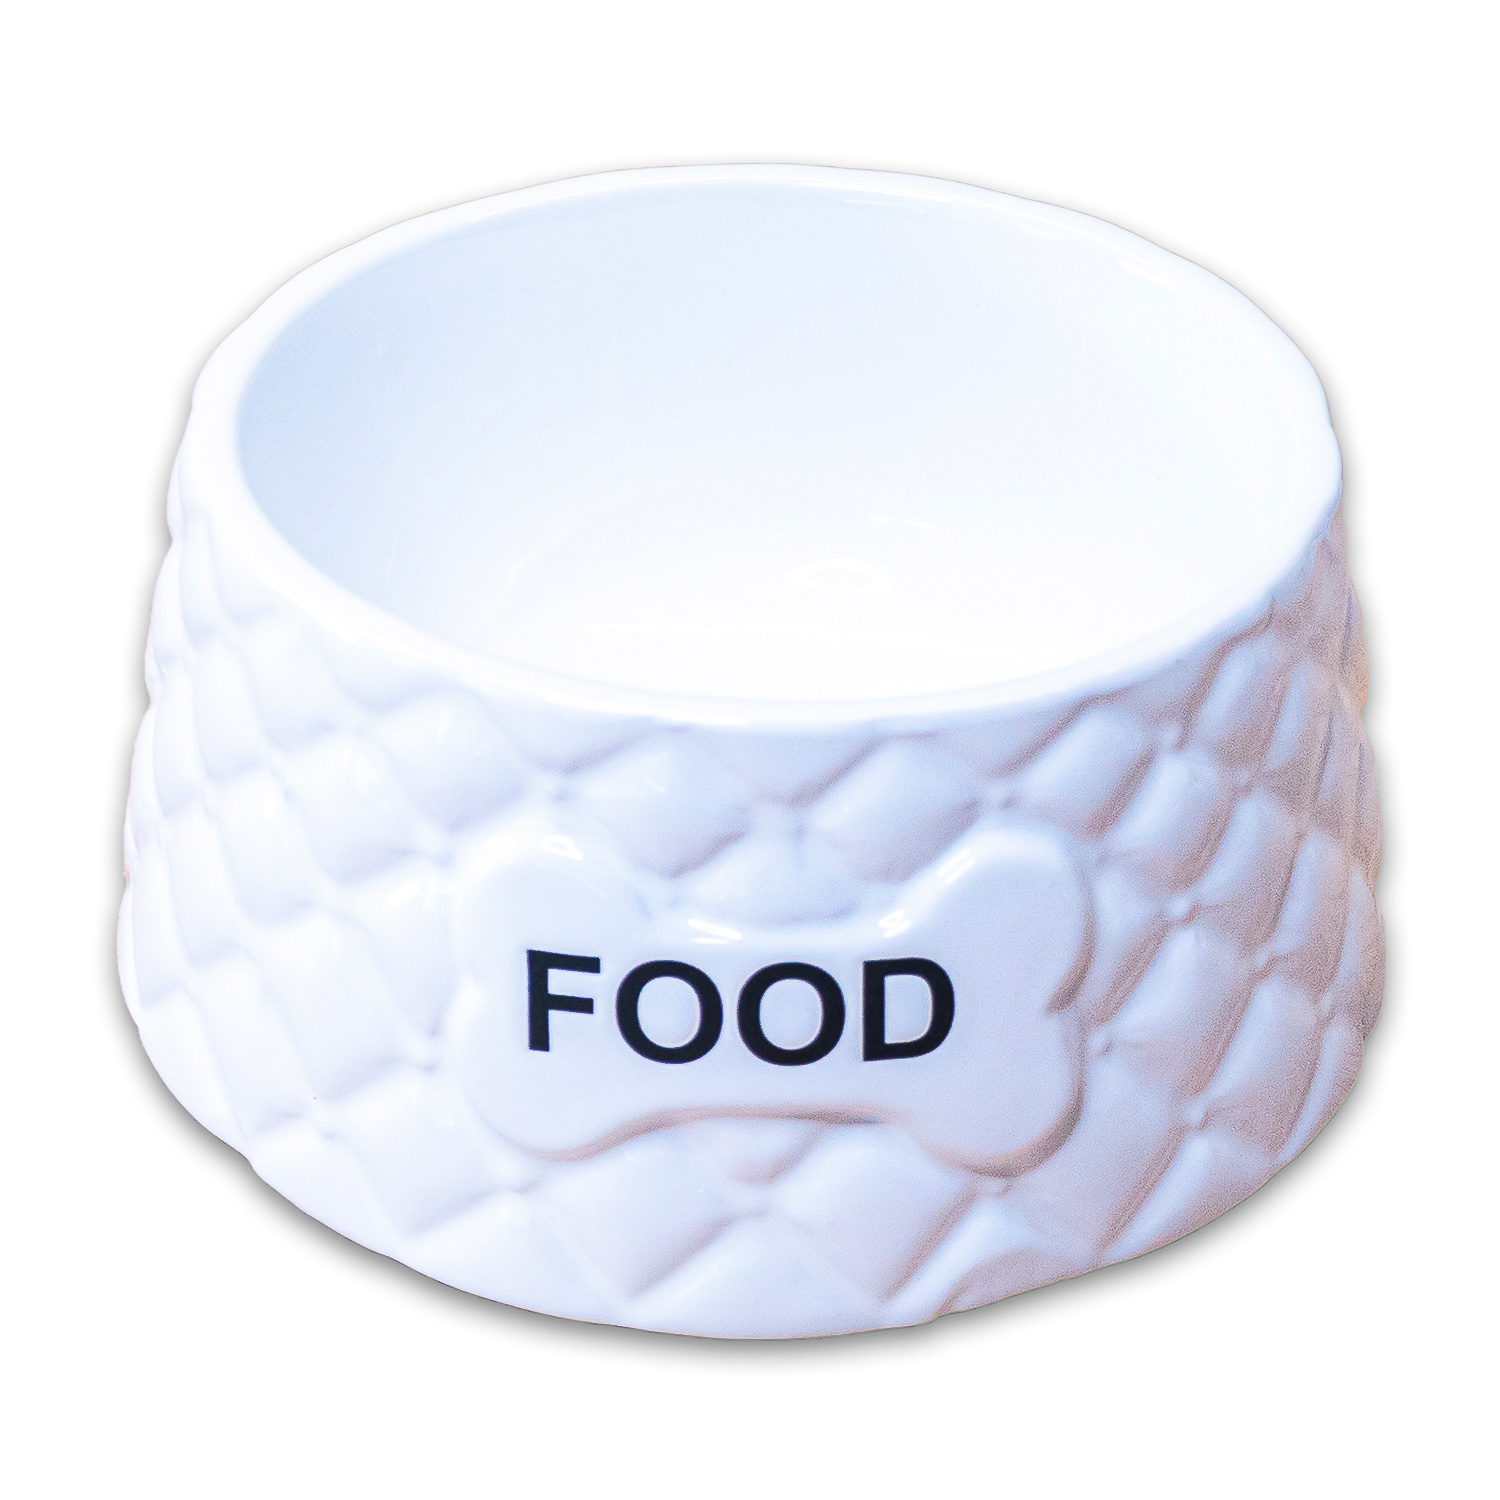 КерамикАрт КерамикАрт миска Food  керамическая, белая (680 мл) керамикарт керамикарт домик яблочко для грызунов 8х7х9 см